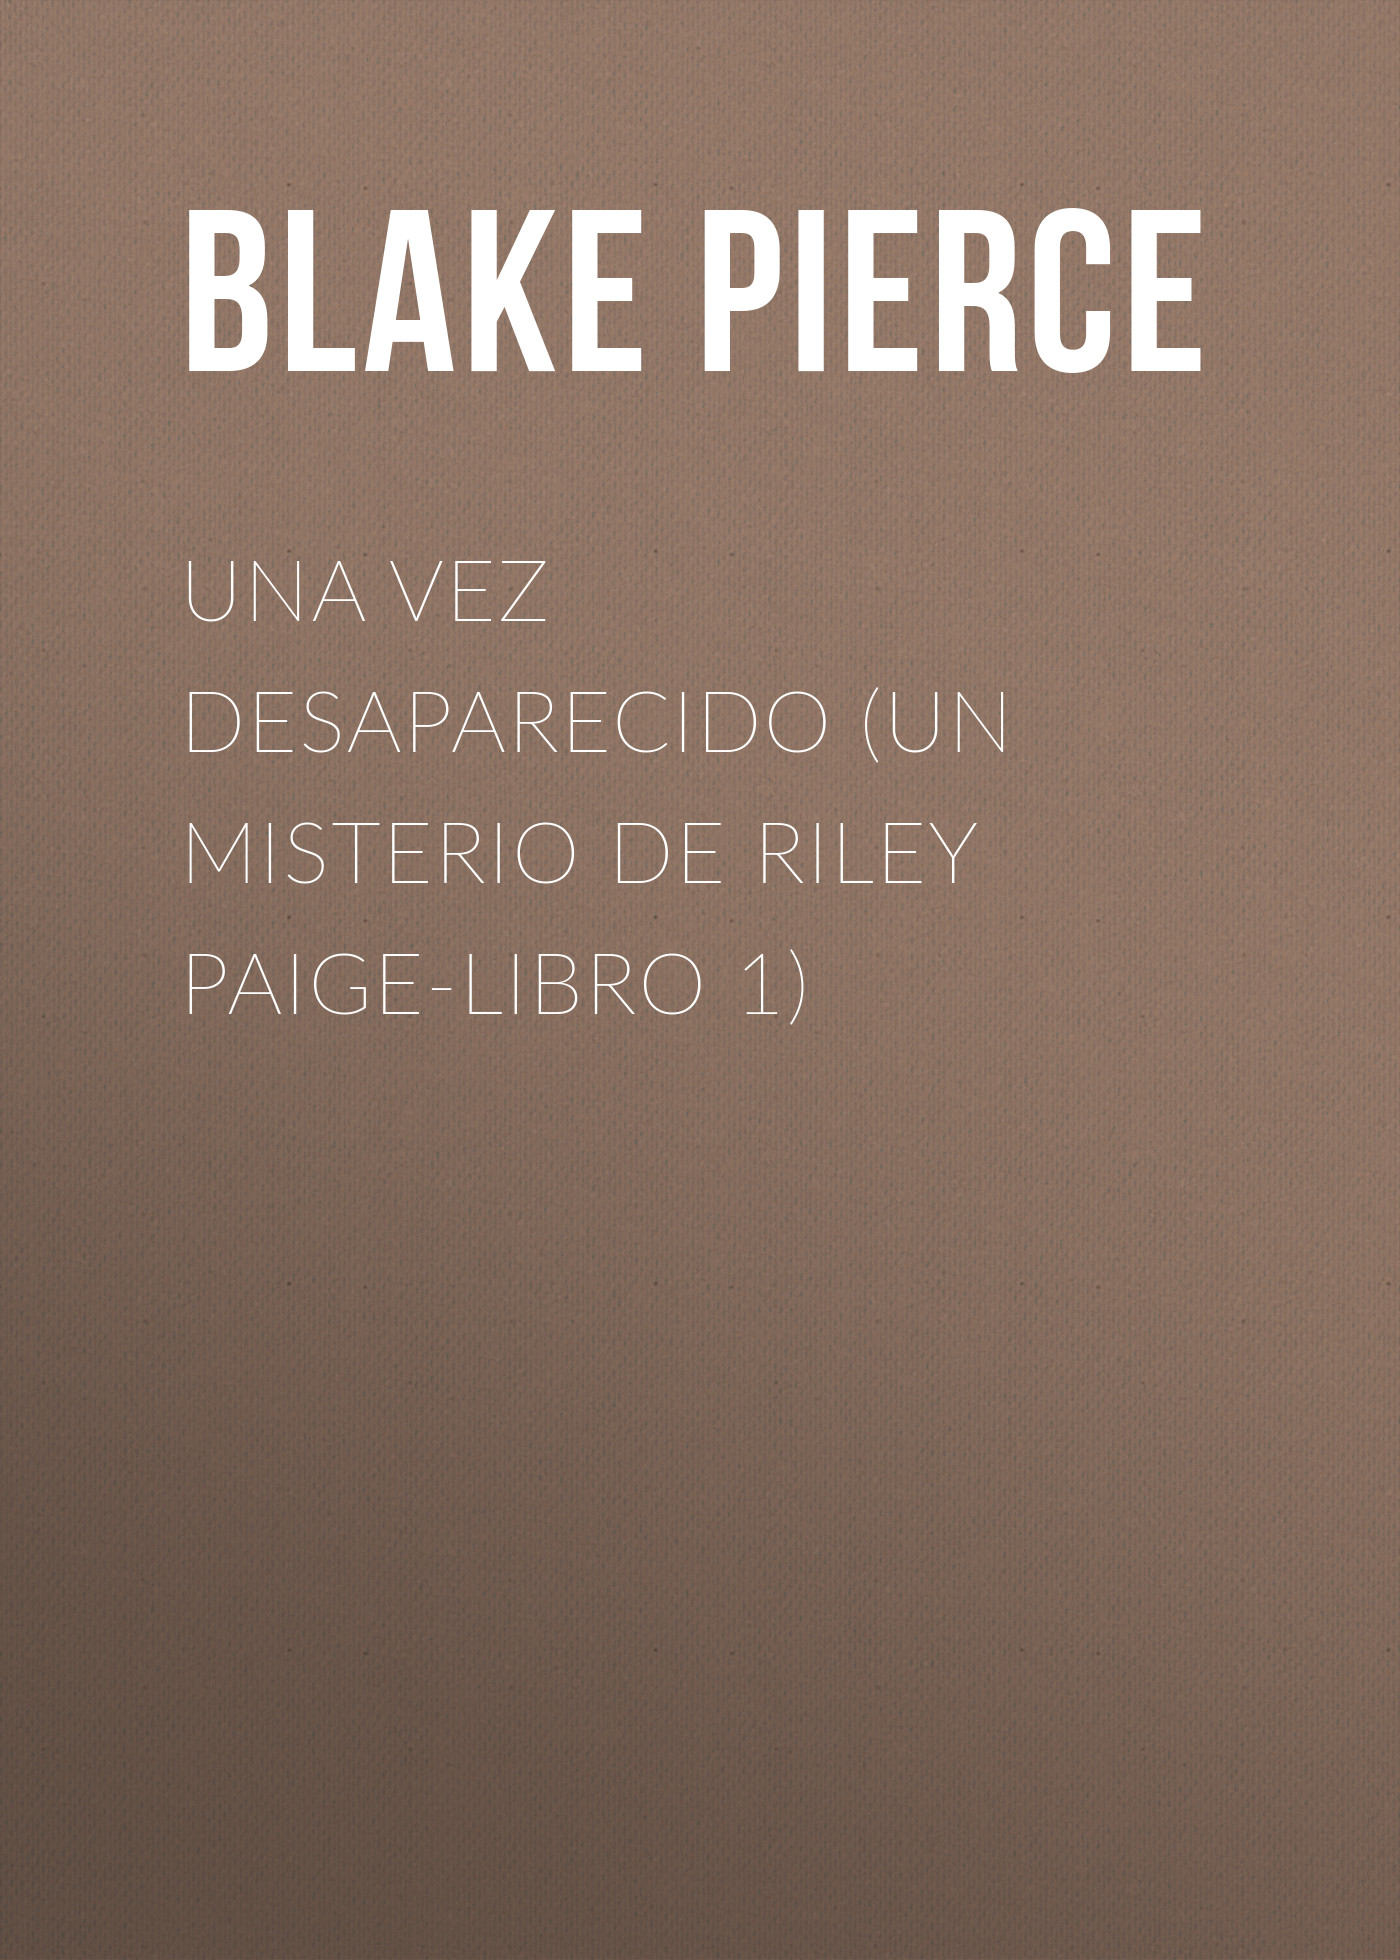 Скачать Una Vez Desaparecido (Un Misterio de Riley Paige-Libro 1) - Blake Pierce